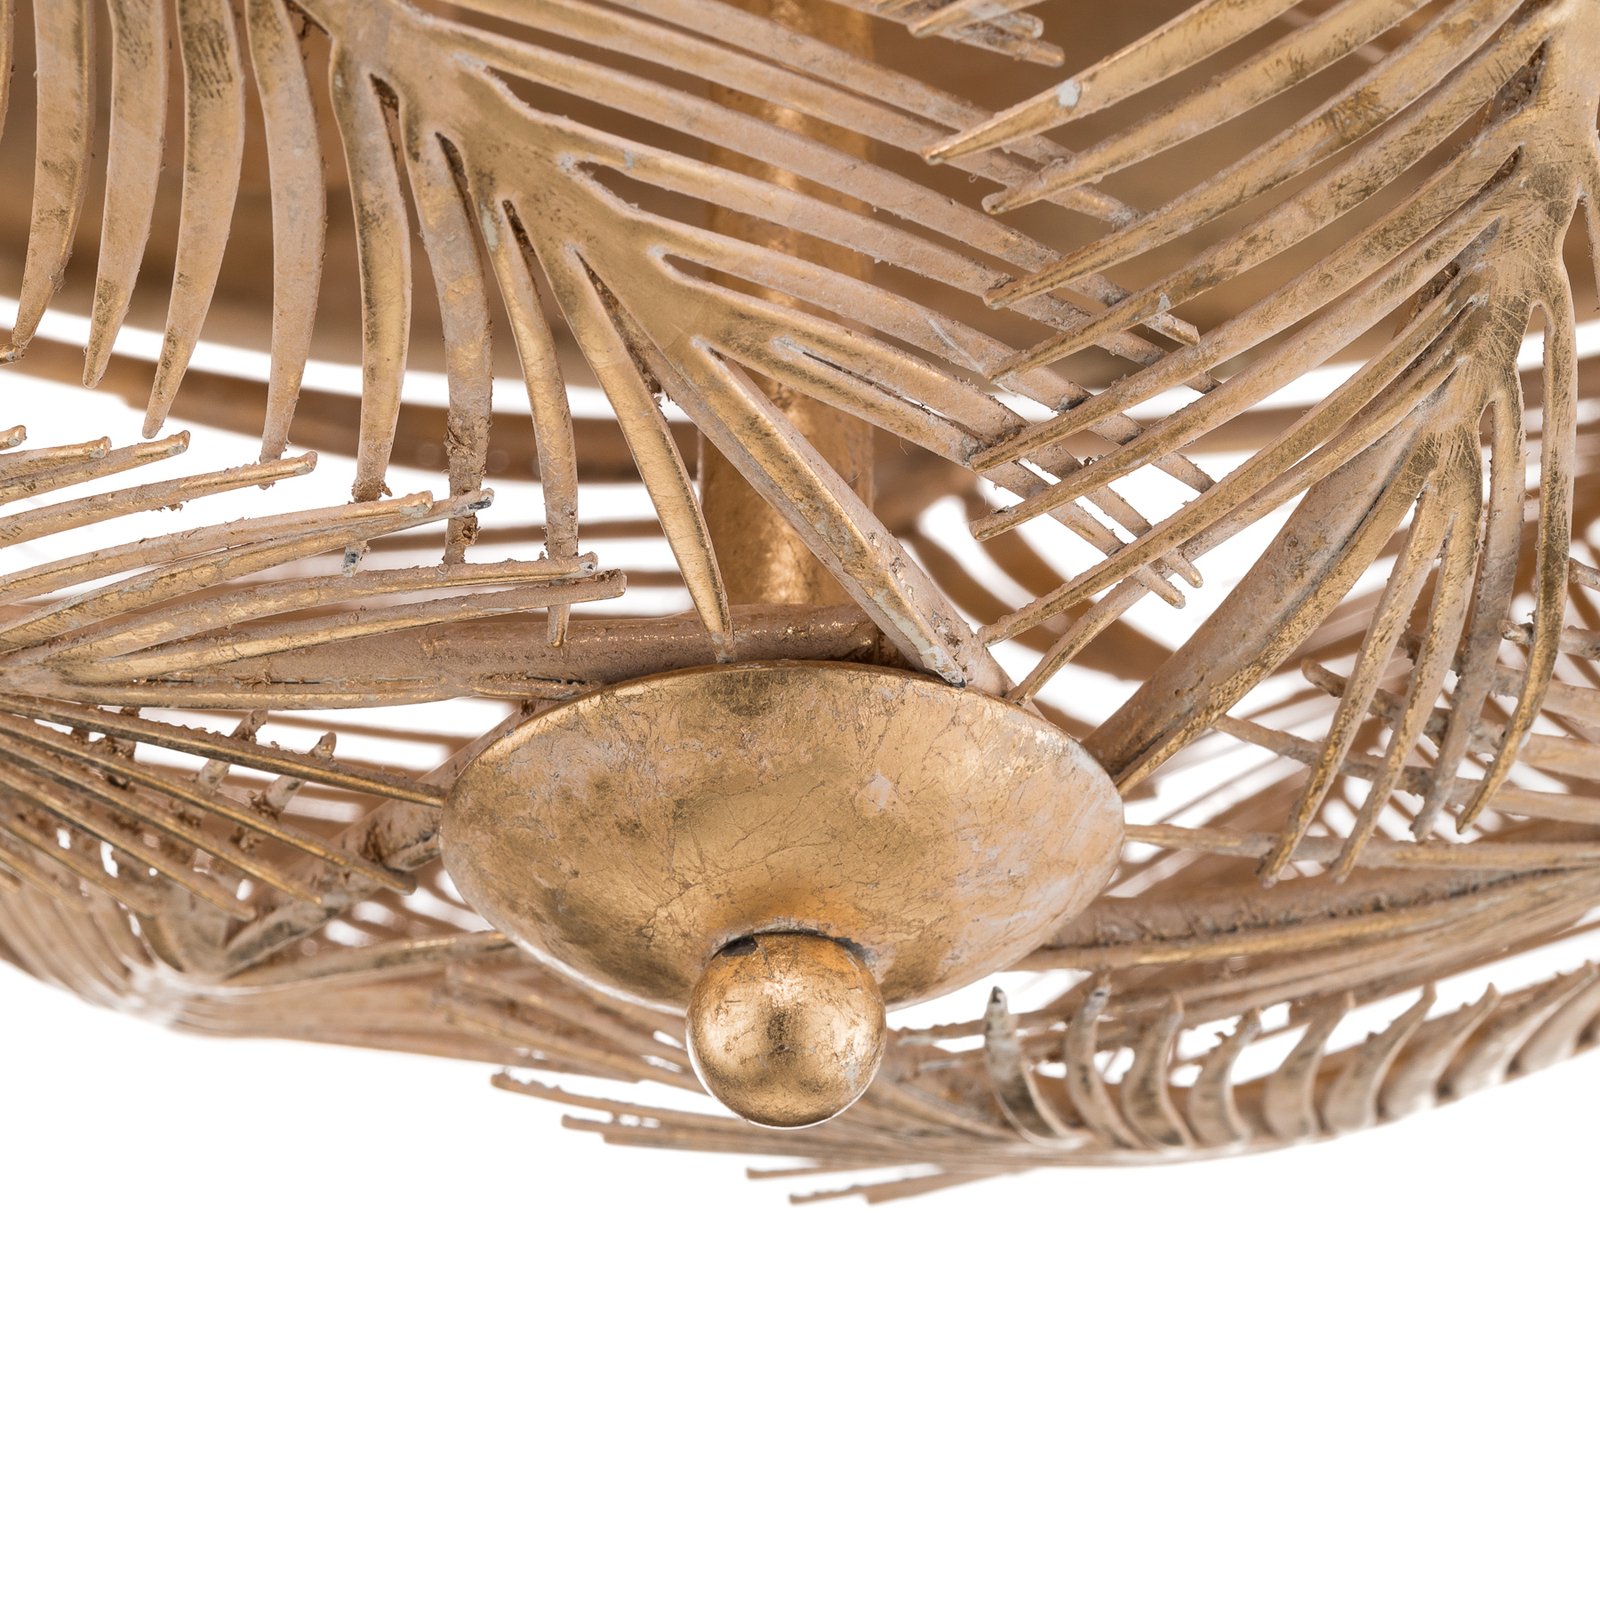 Felce - golden designer ceiling light